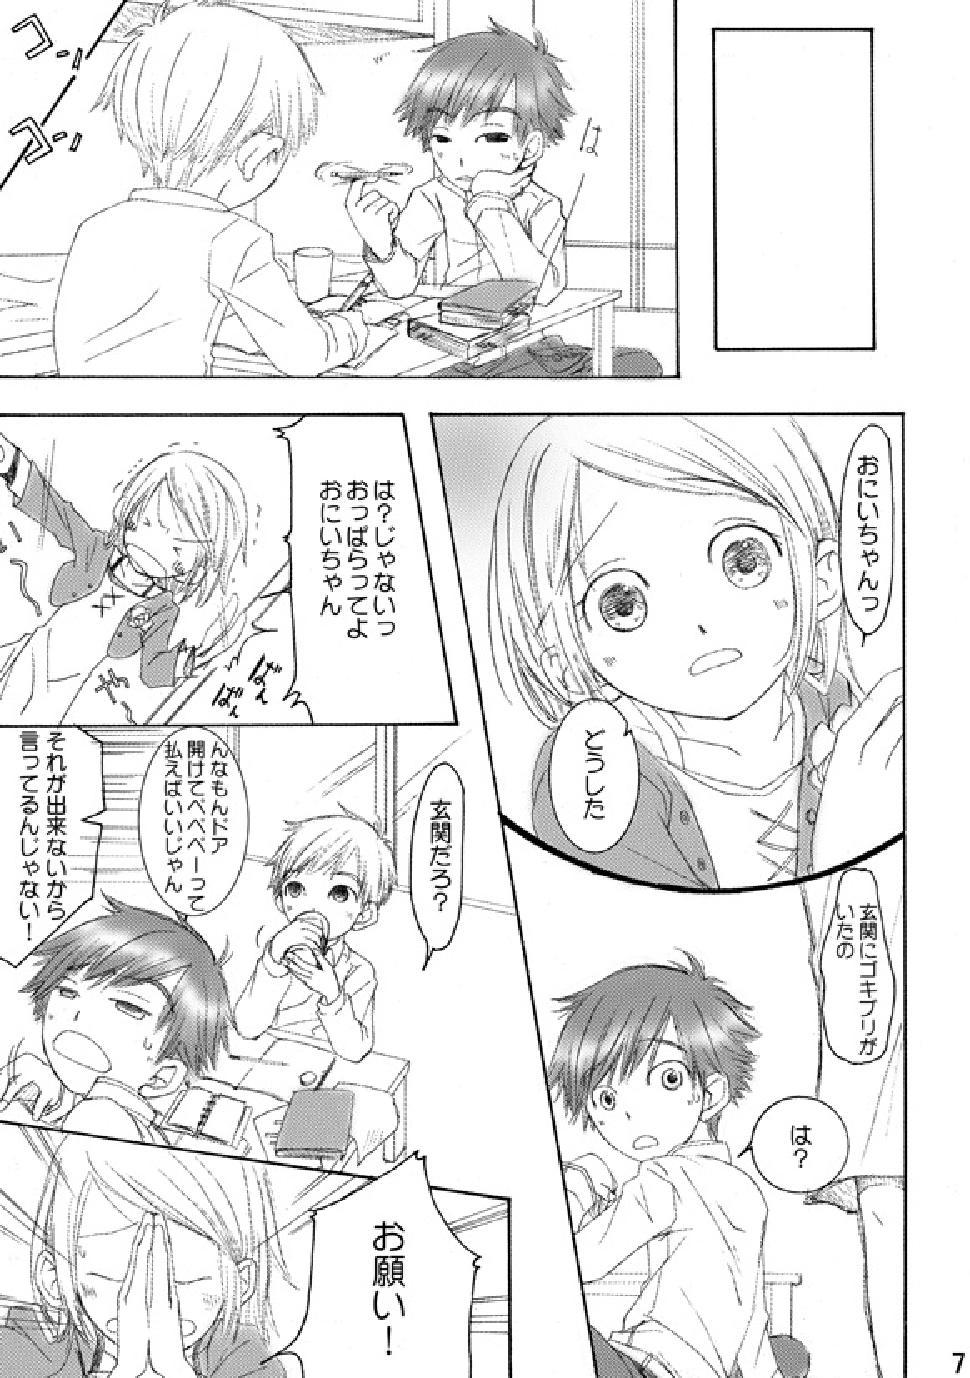 Paja RE: - Digimon adventure Cruising - Page 6